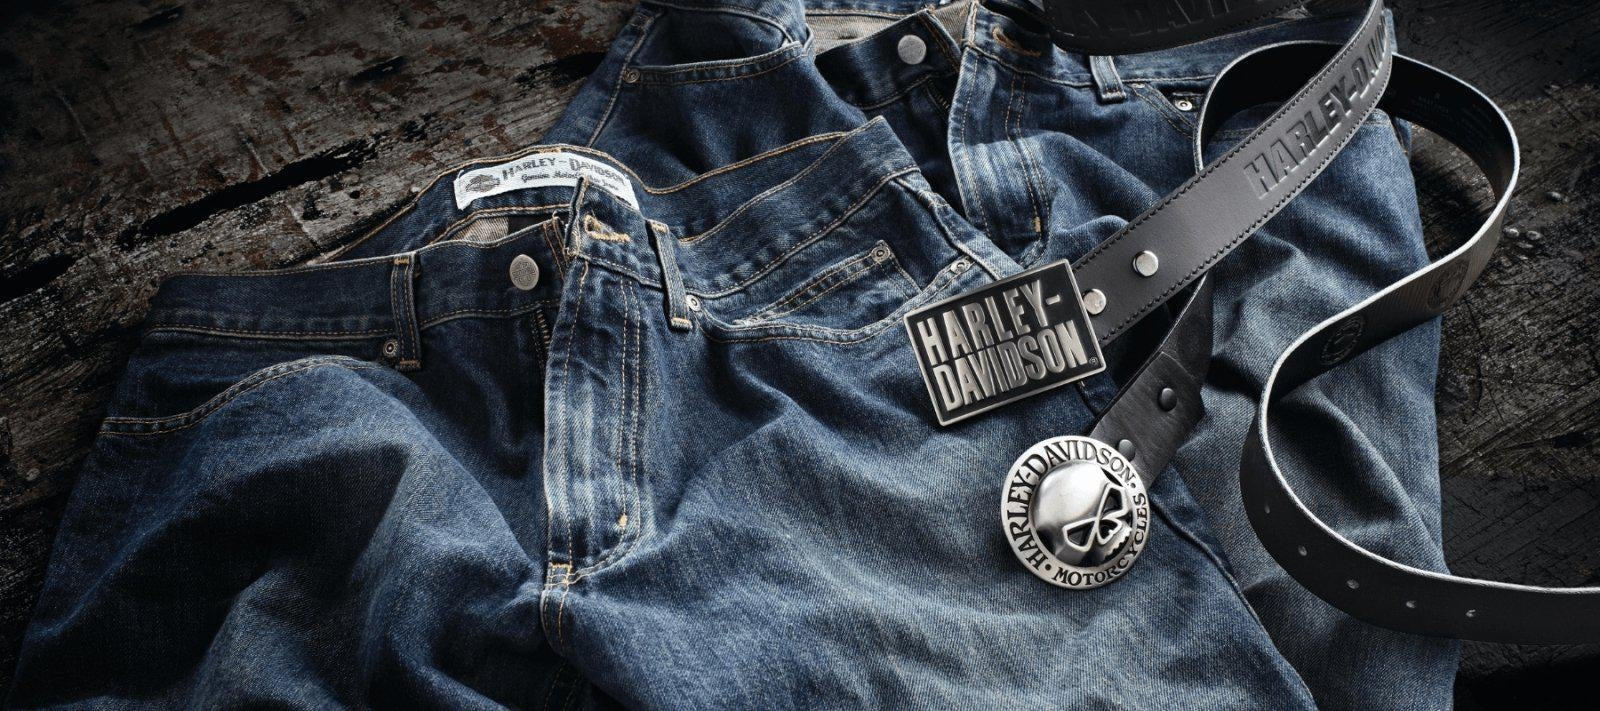 Harley-Davidson Belts & Buckles - Rolling Thunder Harley-Davidson